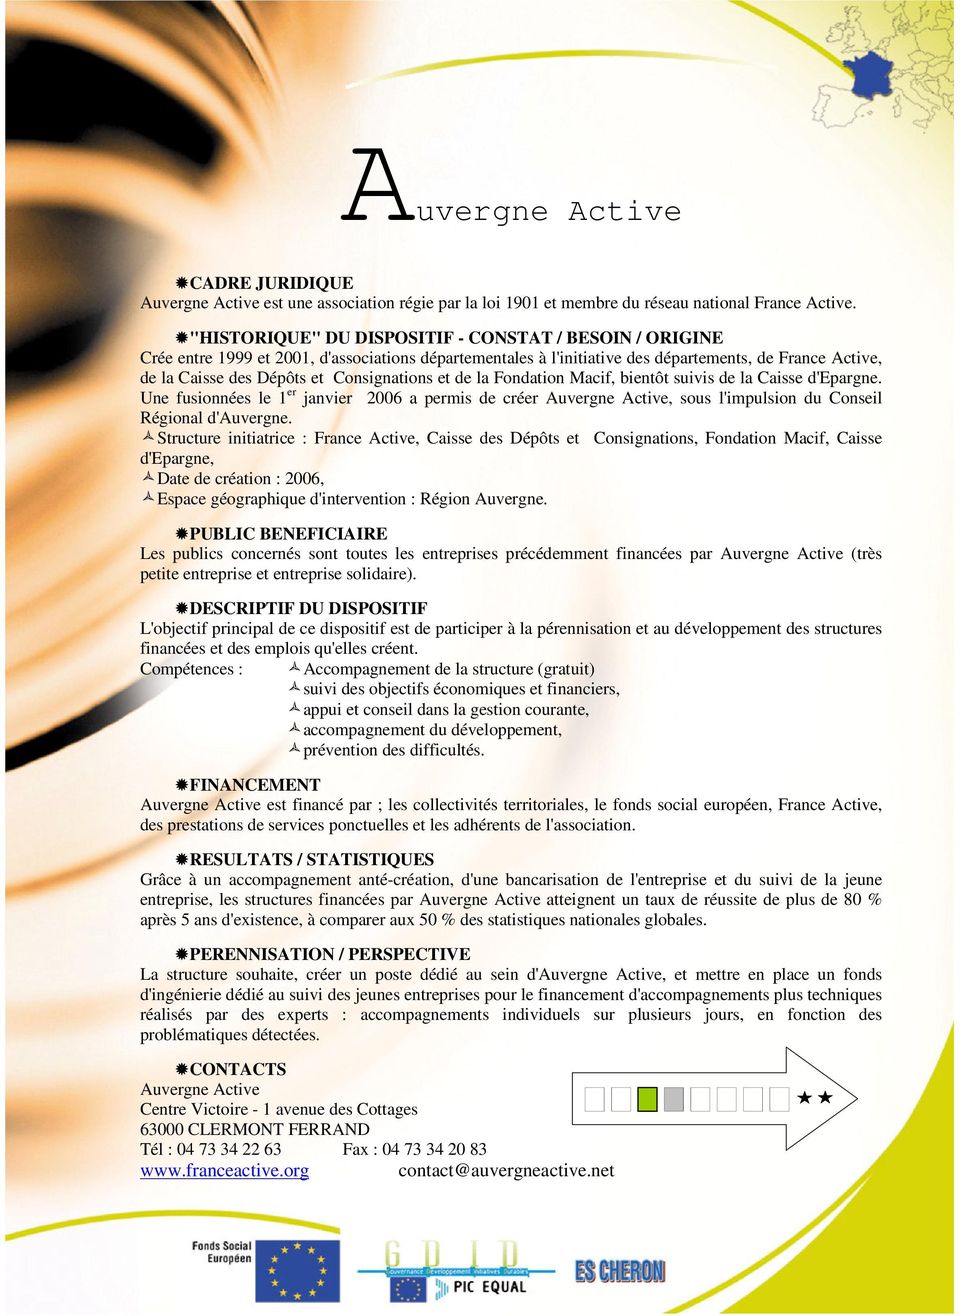 Consignations et de la Fondation Macif, bientôt suivis de la Caisse d'epargne. Une fusionnées le 1 er janvier 2006 a permis de créer Auvergne Active, sous l'impulsion du Conseil Régional d'auvergne.